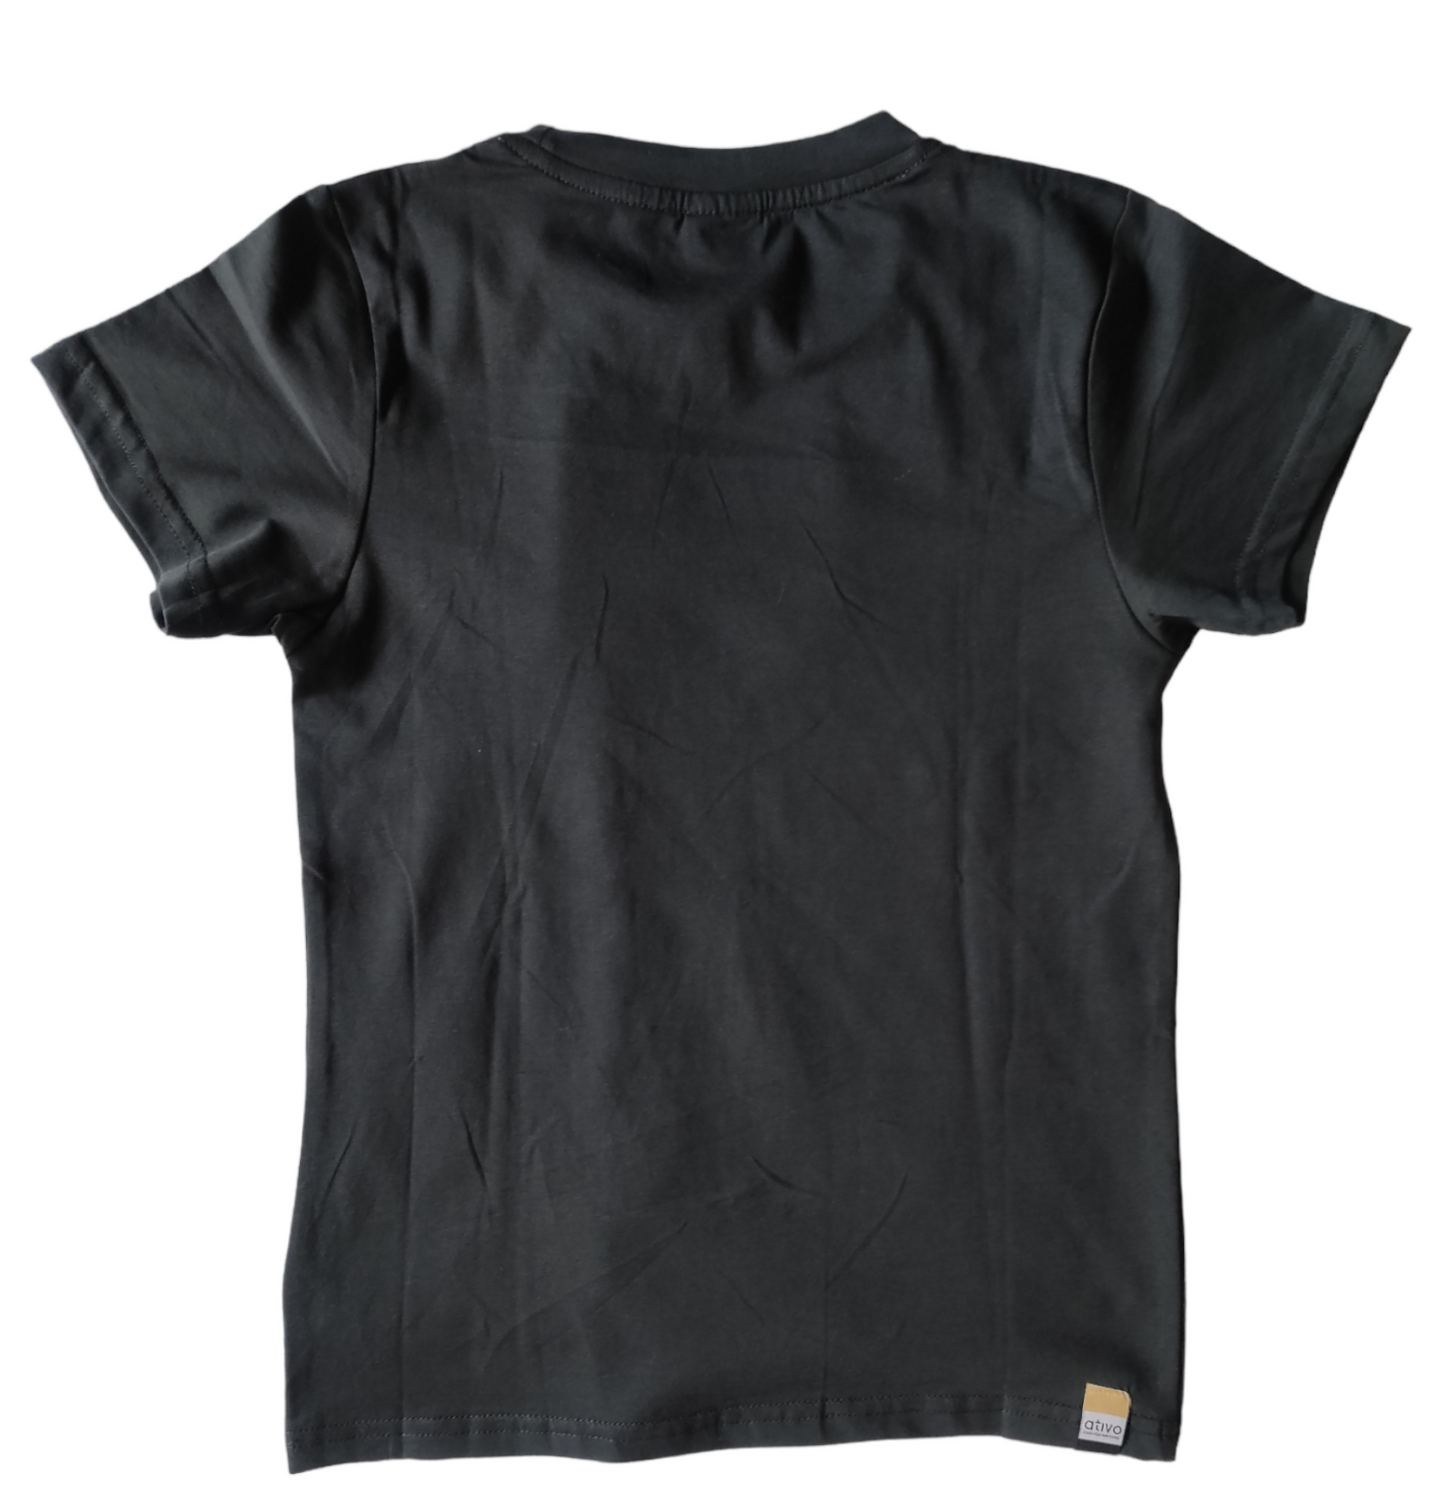 T-Shirt in Cotone a Manica Corta con Stampa Big Ben London Ativo Kids Bambino Ragazzo 4-16 Anni